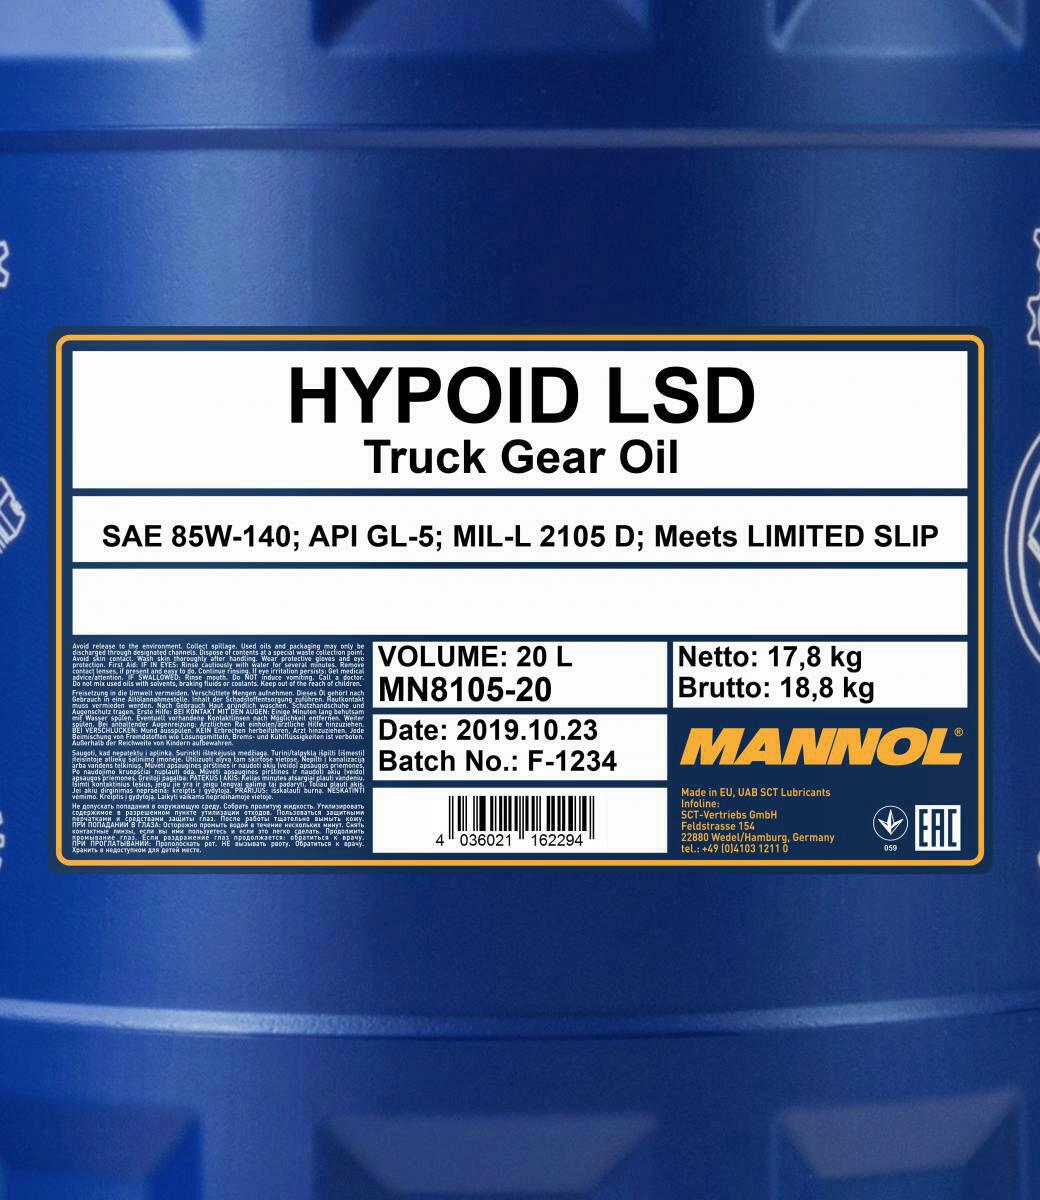 20L Mannol Schaltgetriebeöl Hypoid LSD 85W-140 GL-5